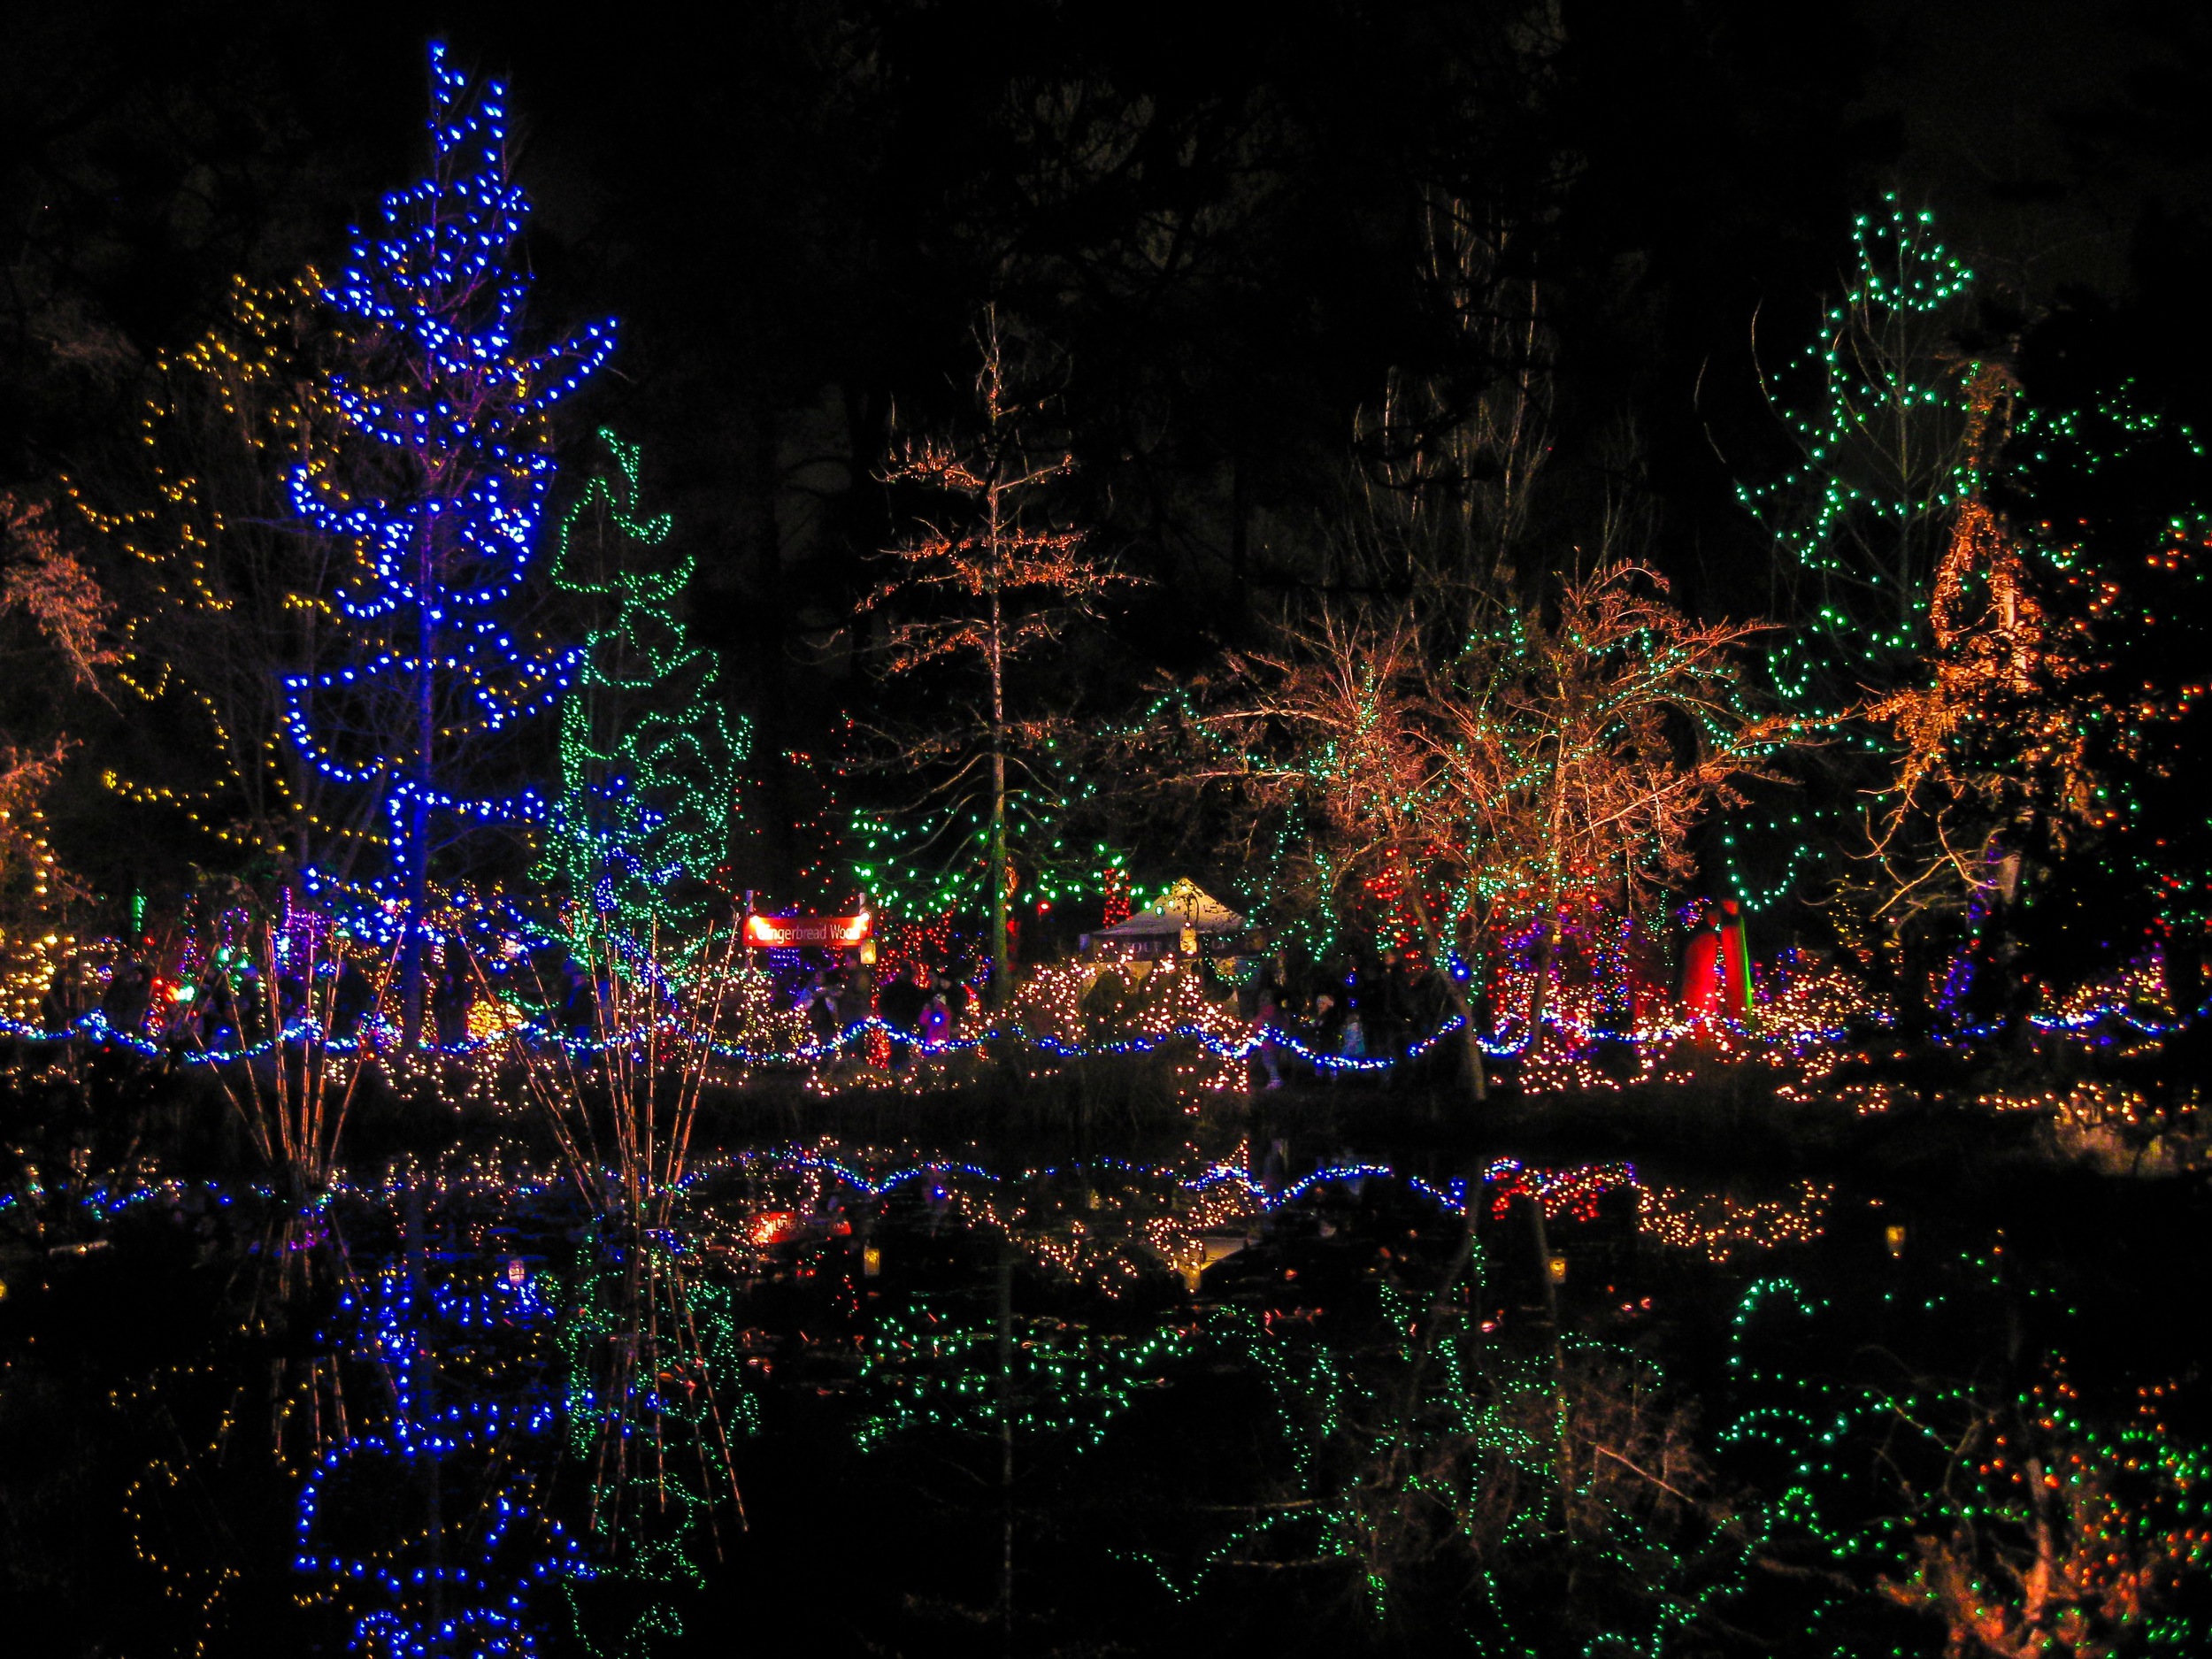 Festival of Lights at Van Dusen Botanical Gardens